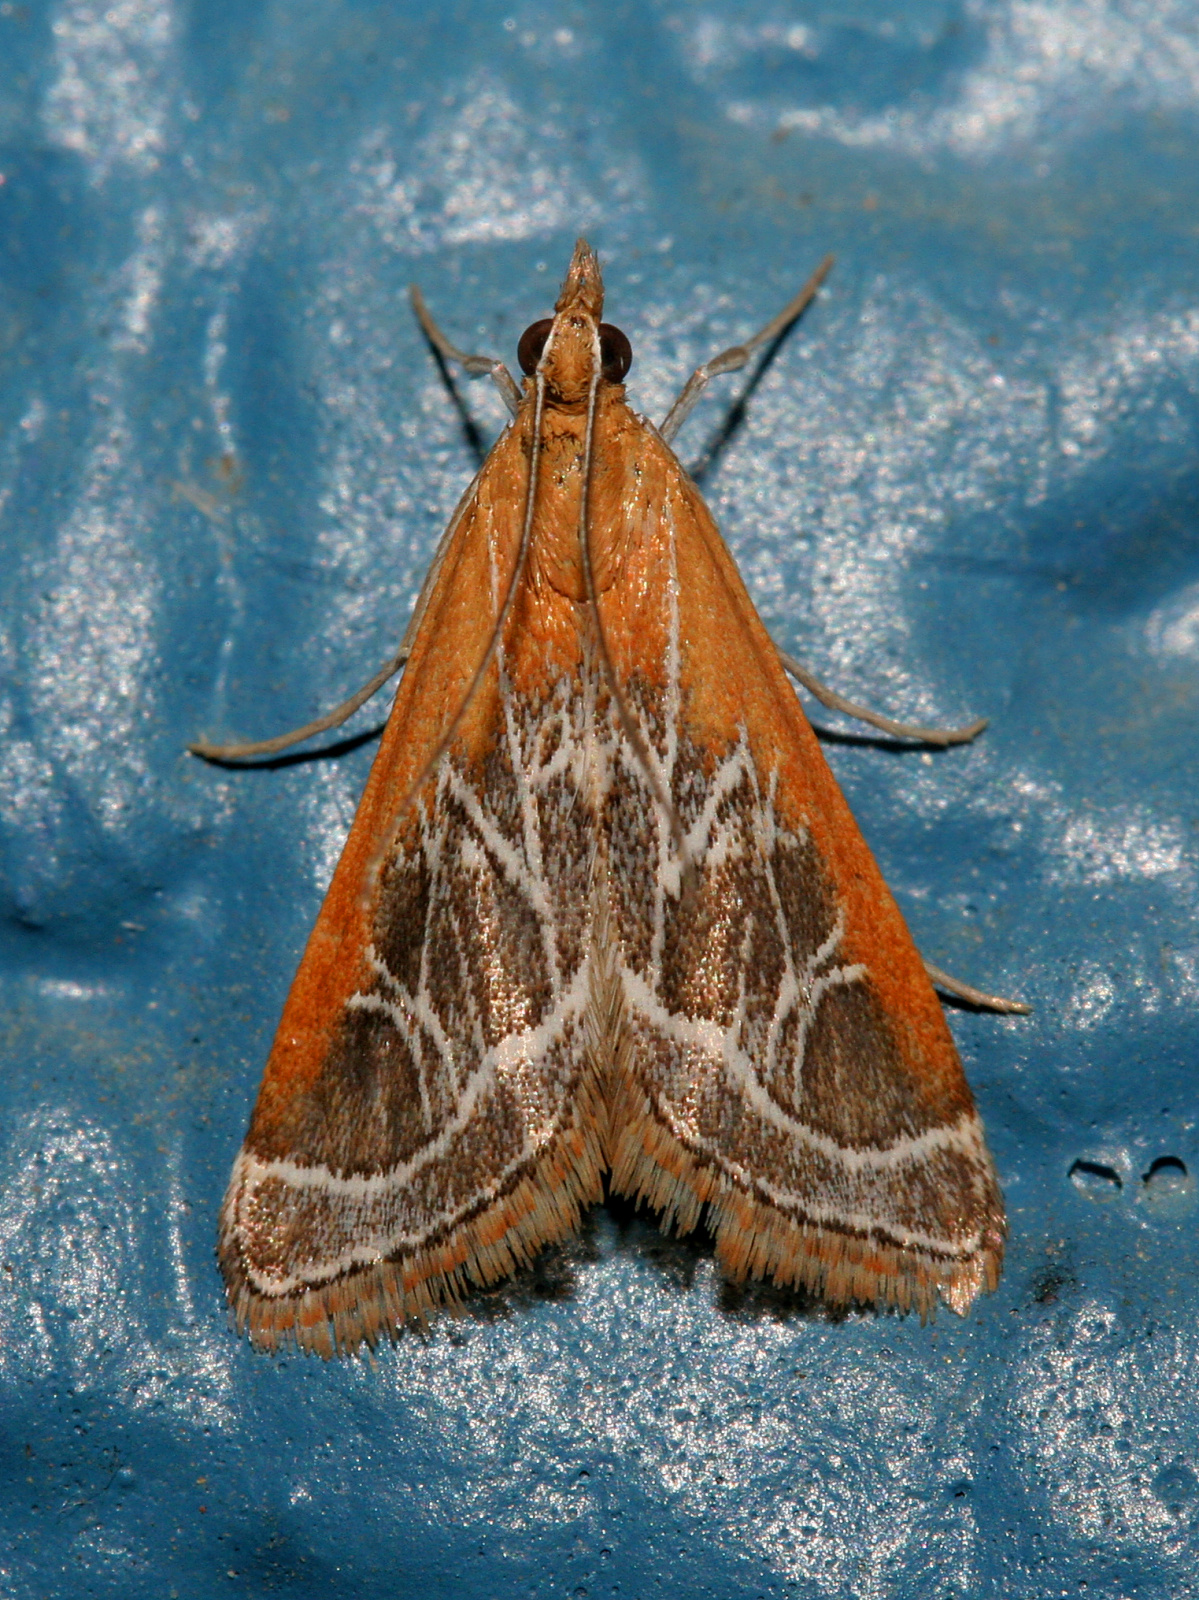 Pyrausta nexalis (Podróże » USA: Epopeja Czejeńska » Zwierzęta » Owady » Motyle i ćmy » Crambidae)